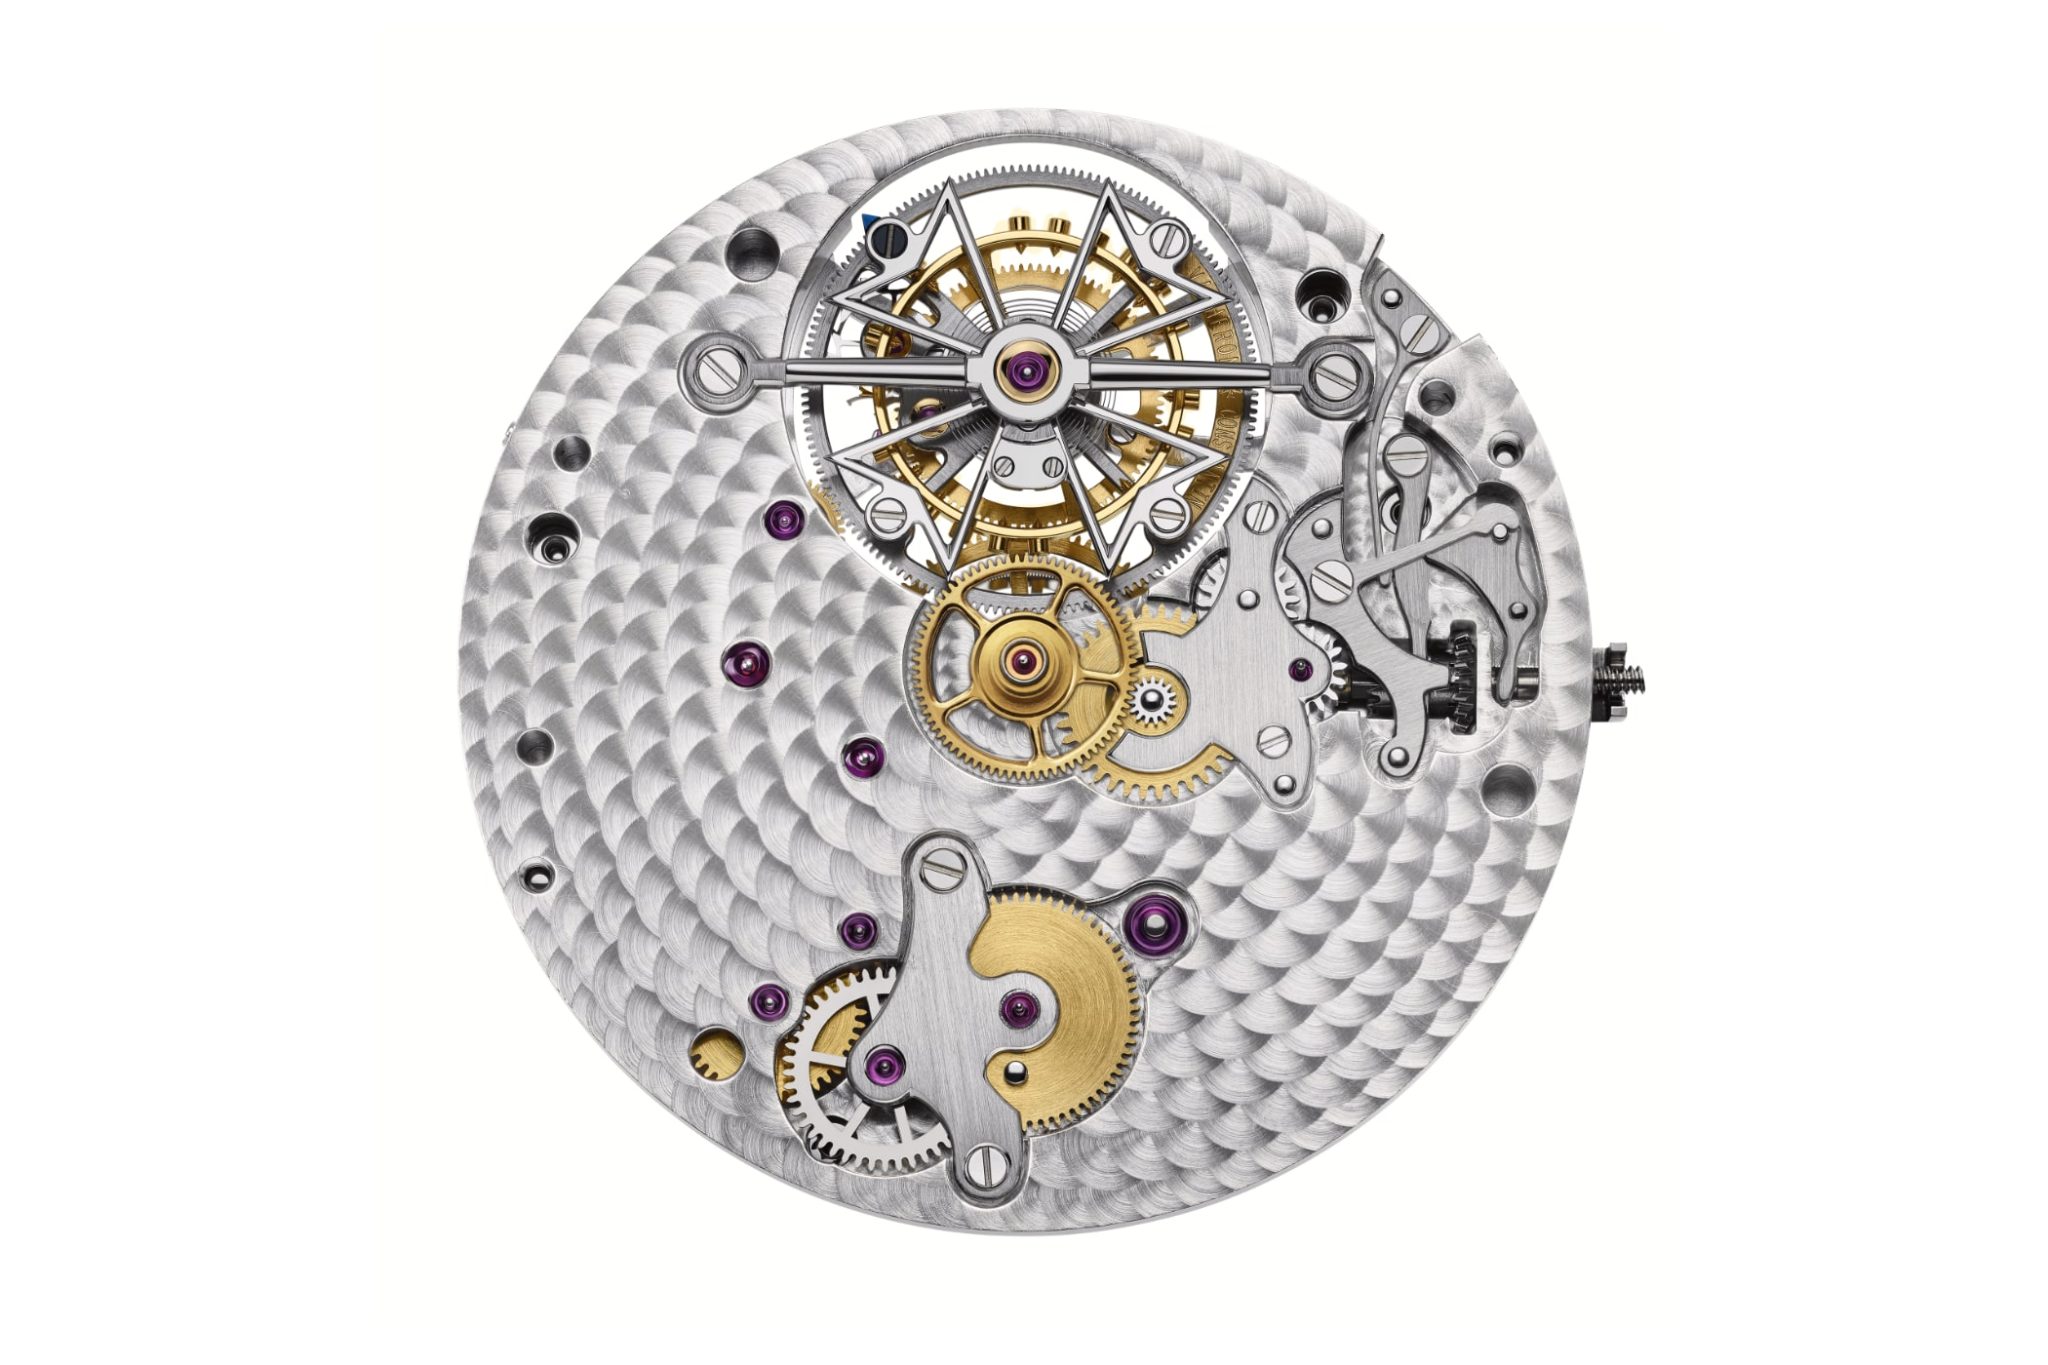 vacheron-constantin-traditionnelle-tourbillon-chronograph-collection-excellence-platine-5100t-000p-h041-movement-calibre-vc-3200-front